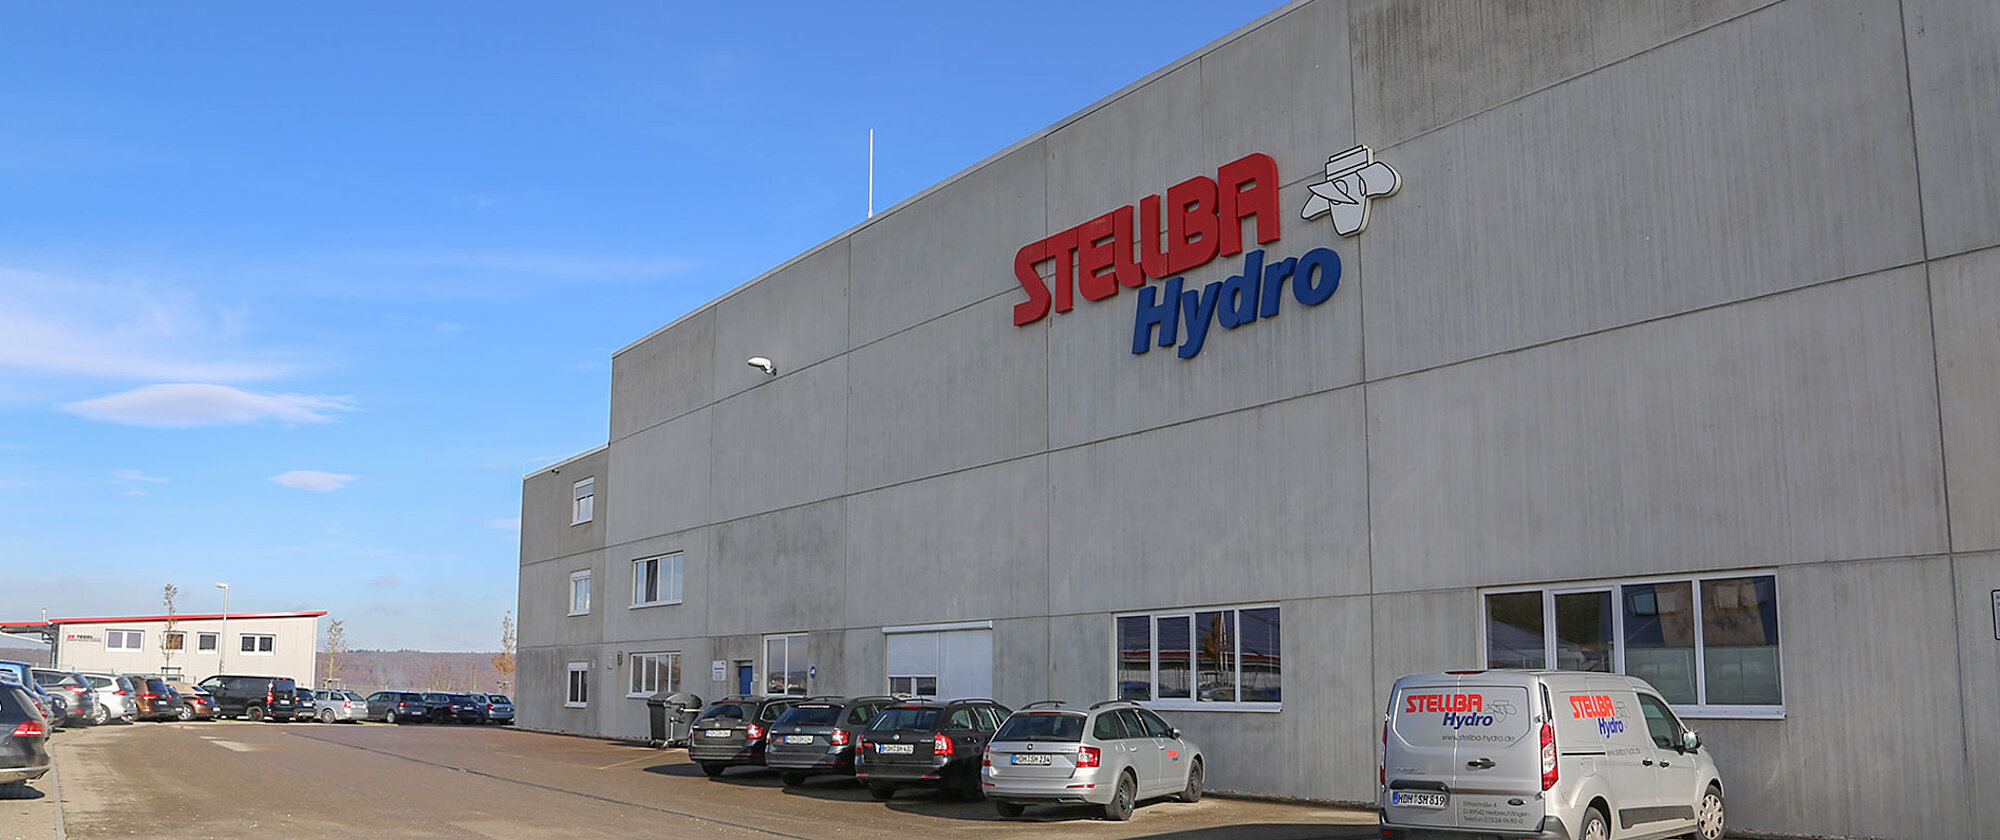  Stellba Hydro Firmengebaeude Aussenansicht